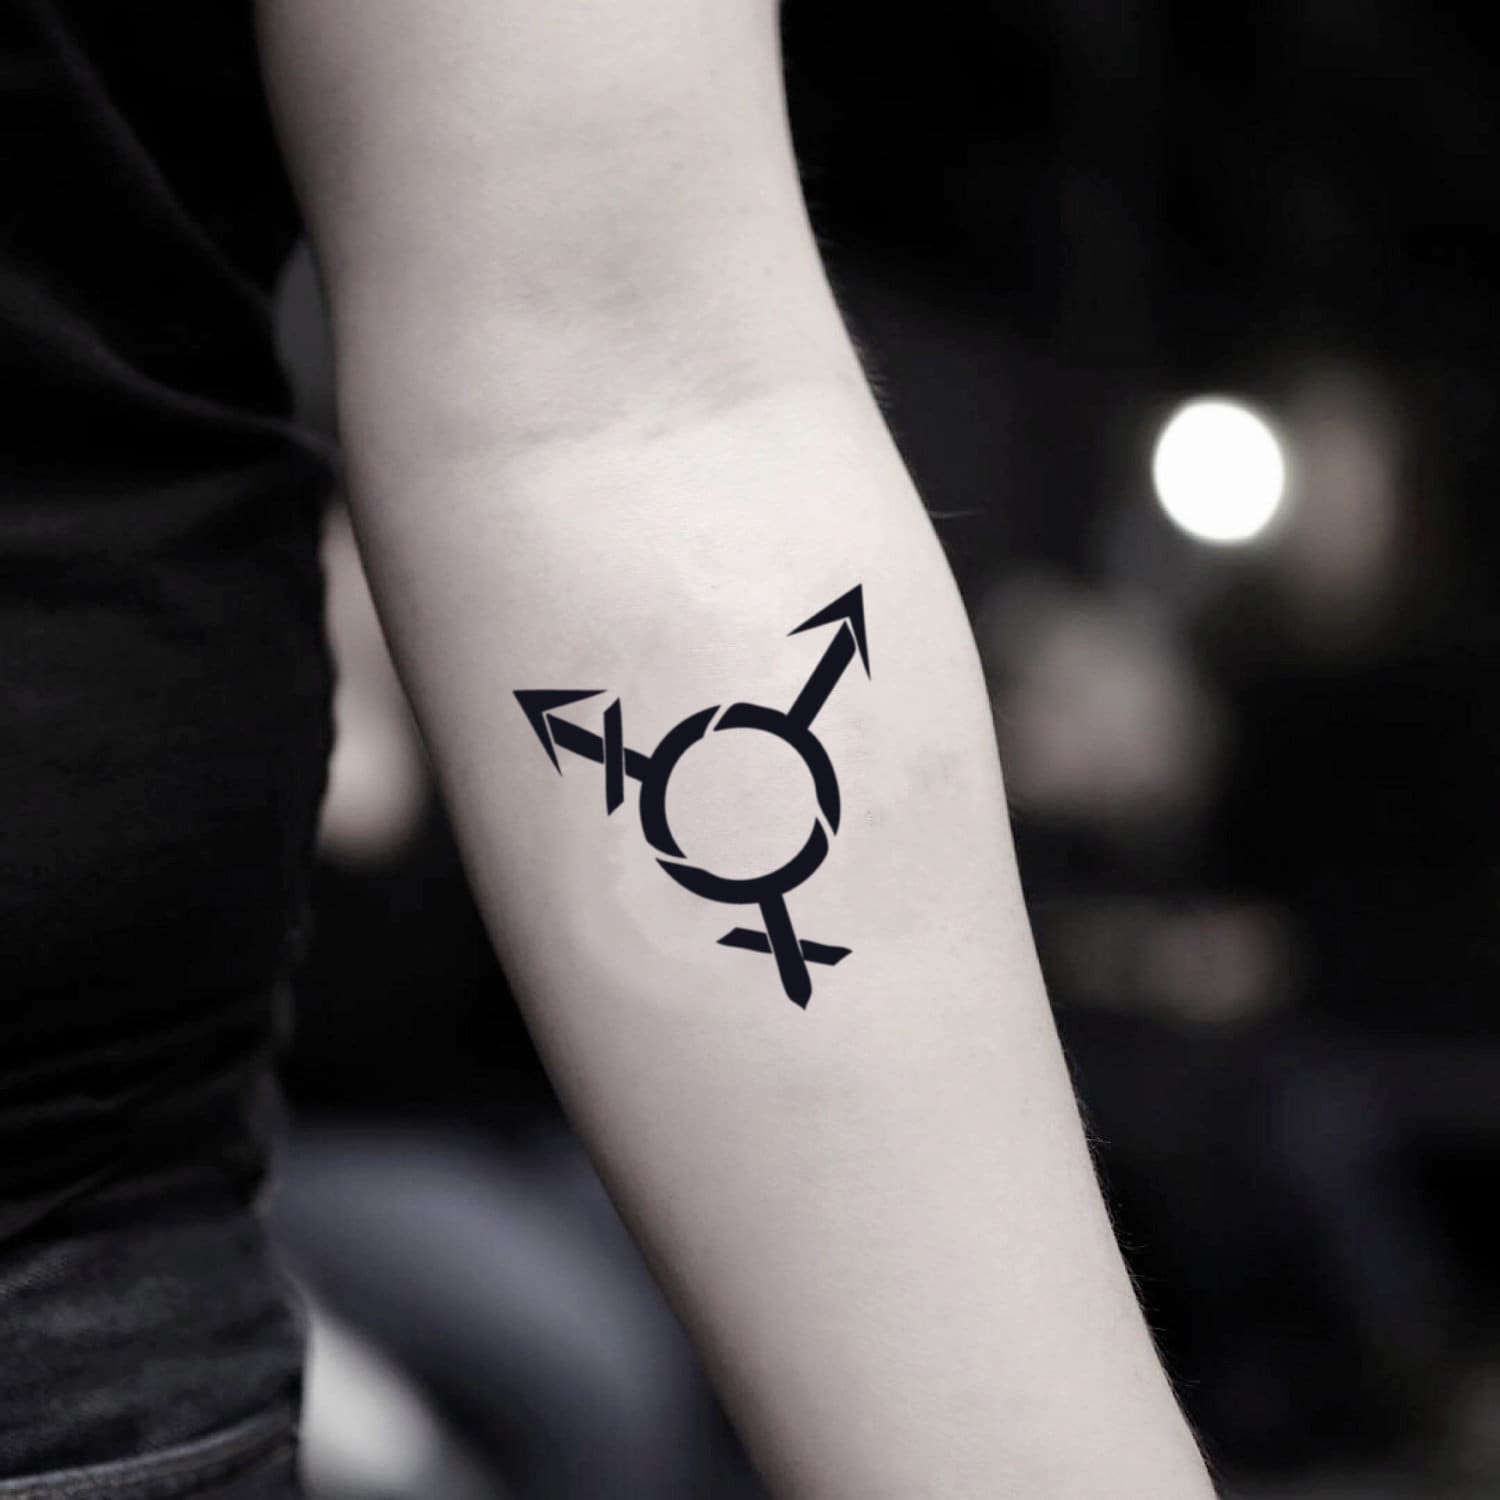 Amazoncom Azeeda Large Transgender Pride Flag Temporary Tattoo  TO00031129  Everything Else